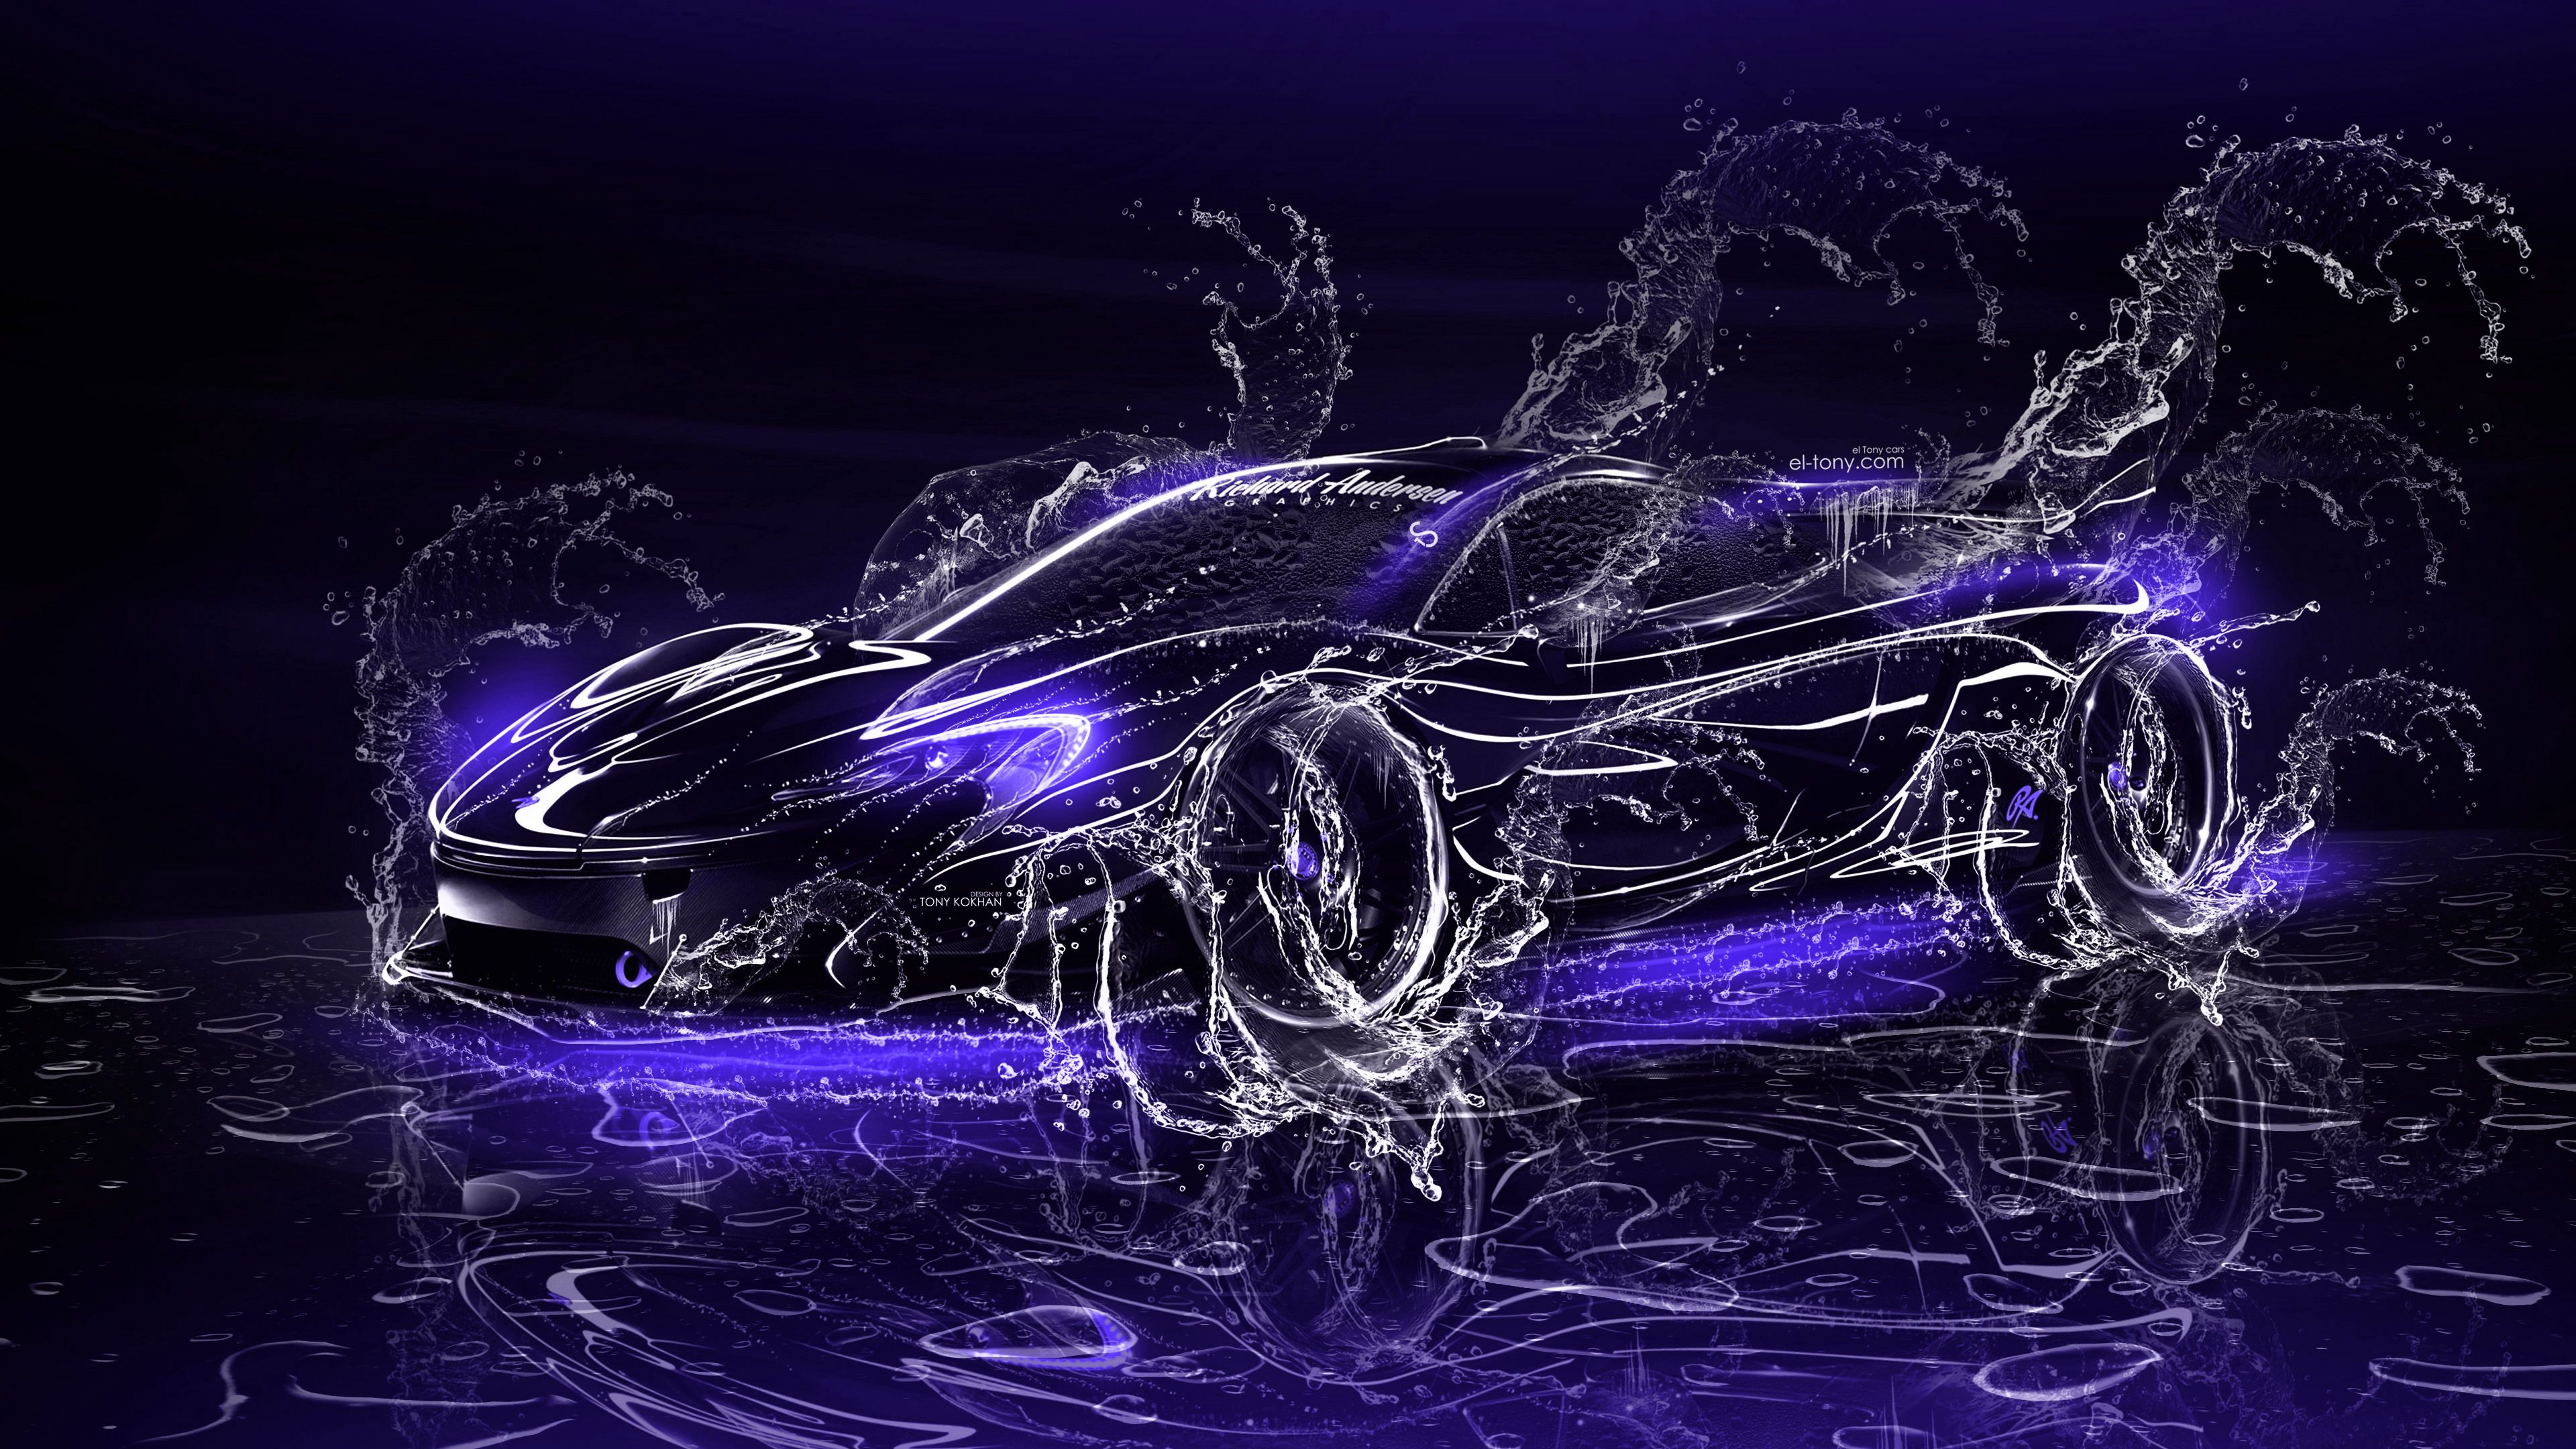 McLaren P1 Super 3D Water Splashes Car 2017 el Tony